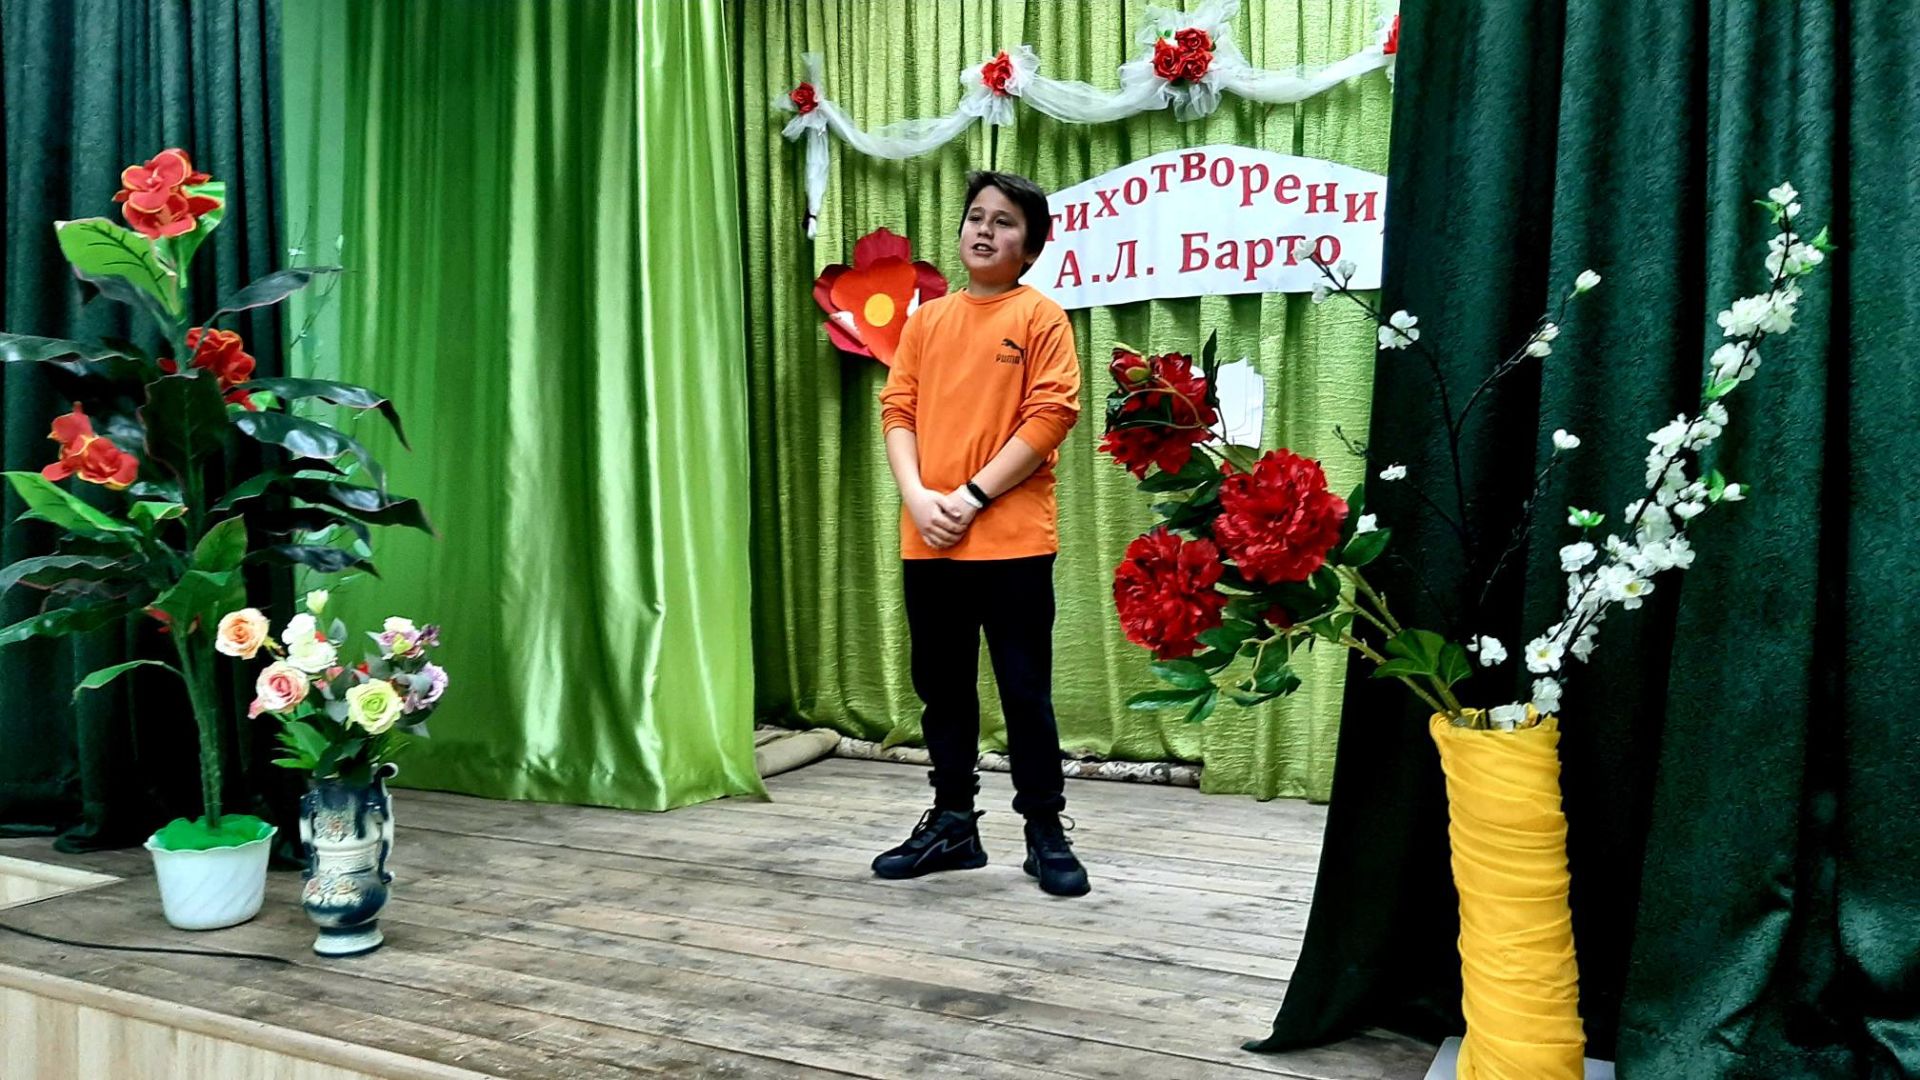 Ко Дню рождения Агнии Барто в Бугульминском районе прошел конкурс чтецов